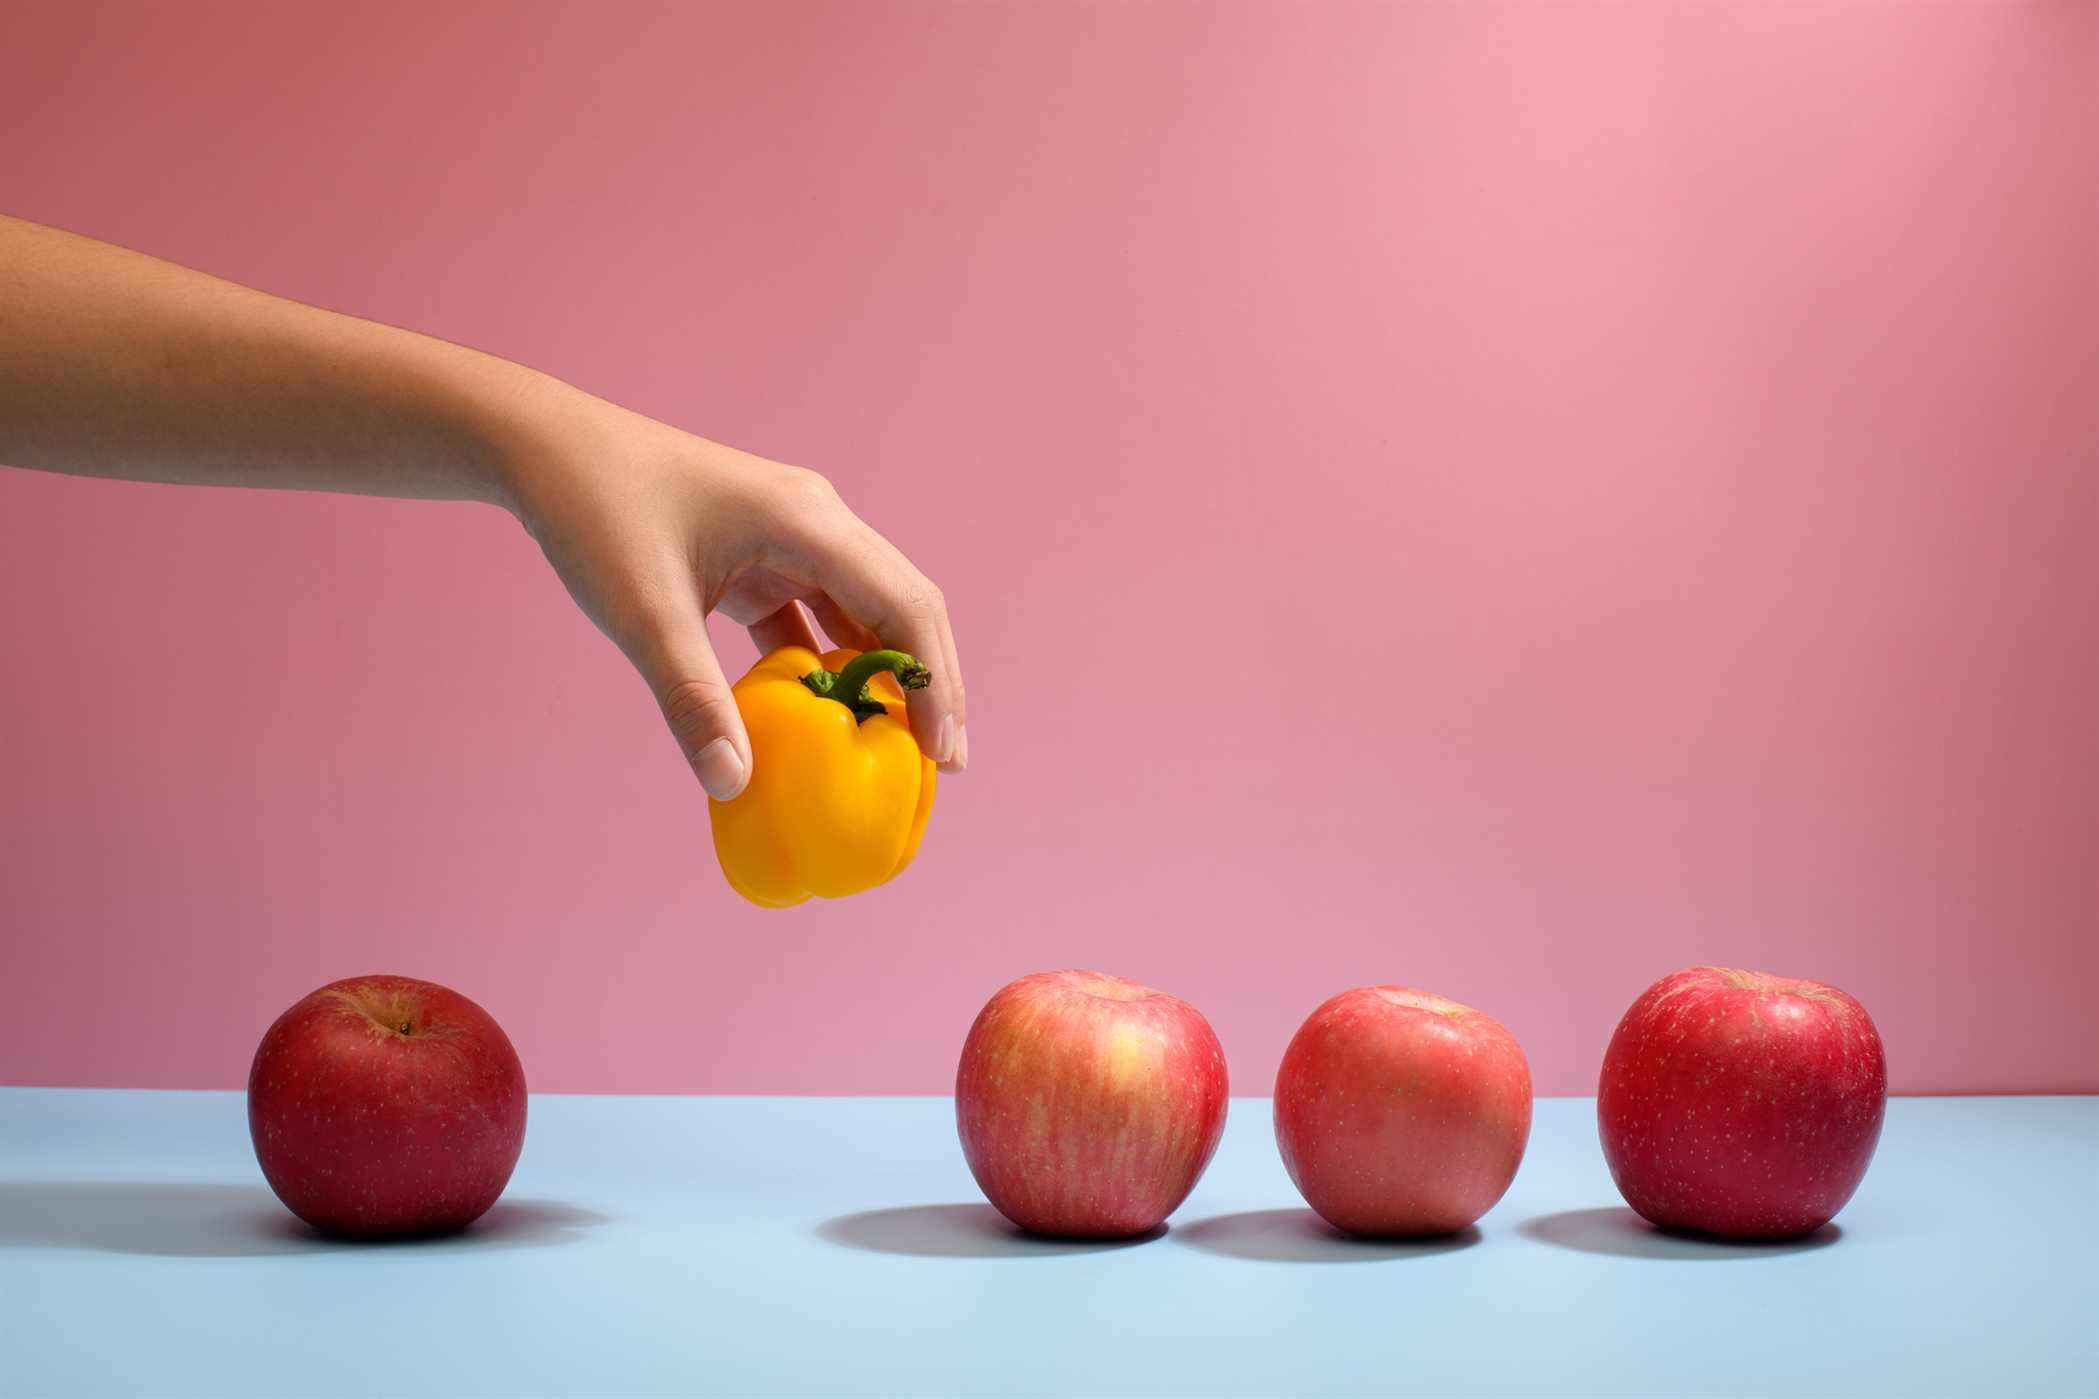 Cueillir à la main un poivron jaune se démarquant des pommes